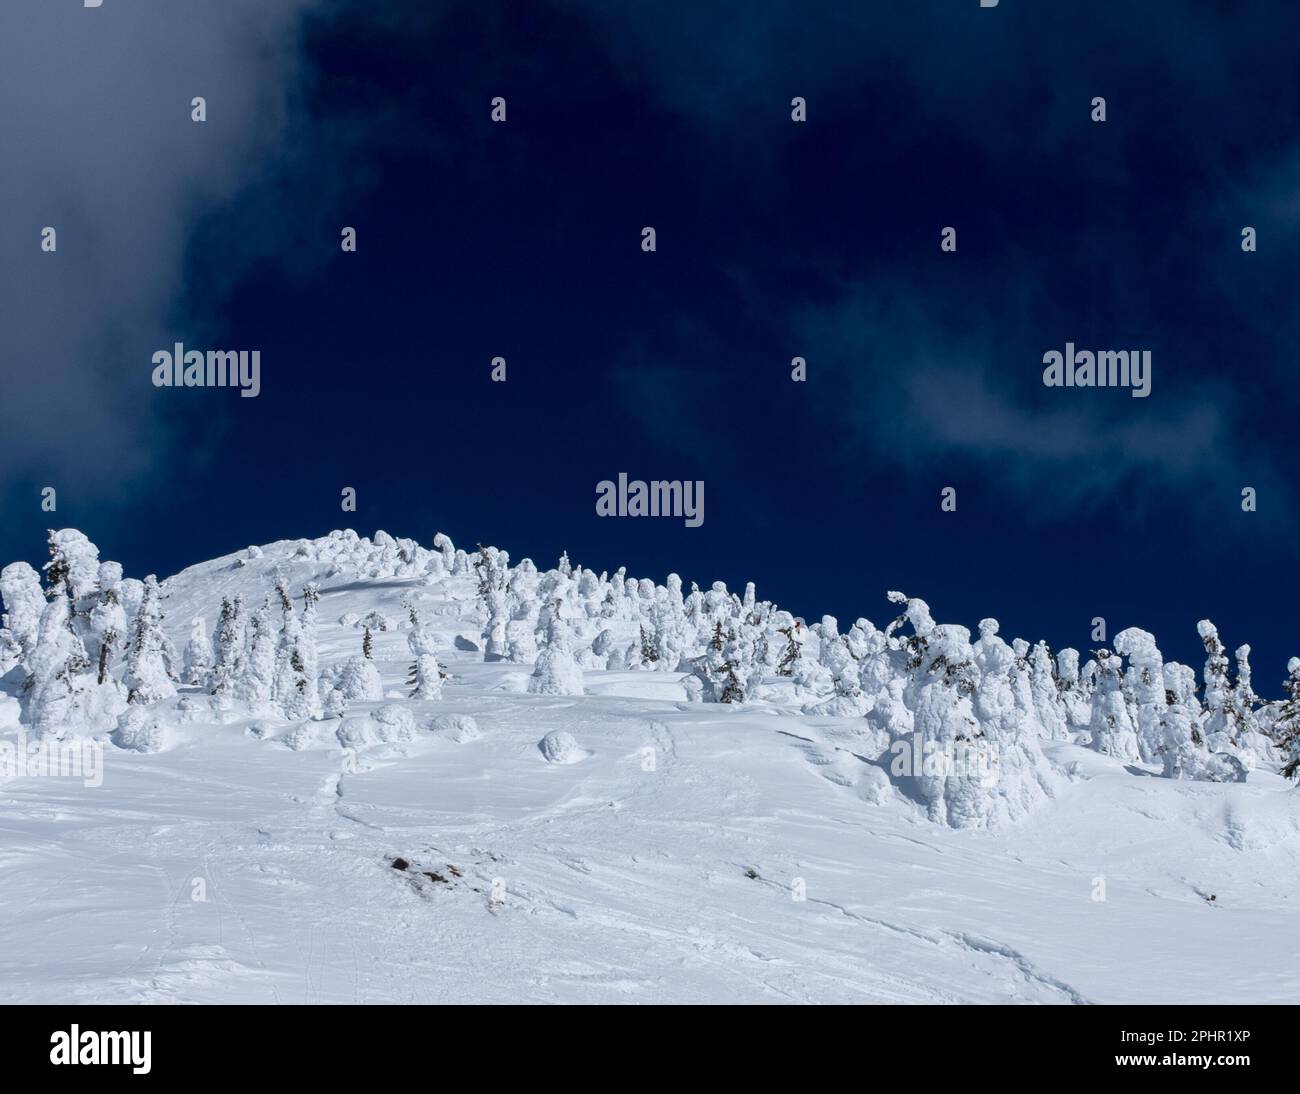 Gli alberi di alta quota possono assumere forme umane. In genere sono chiamati Snow Ghosts. Questi si trovano sul Monte MacKenzie vicino a Revelstoke, BC, Canada. Foto Stock